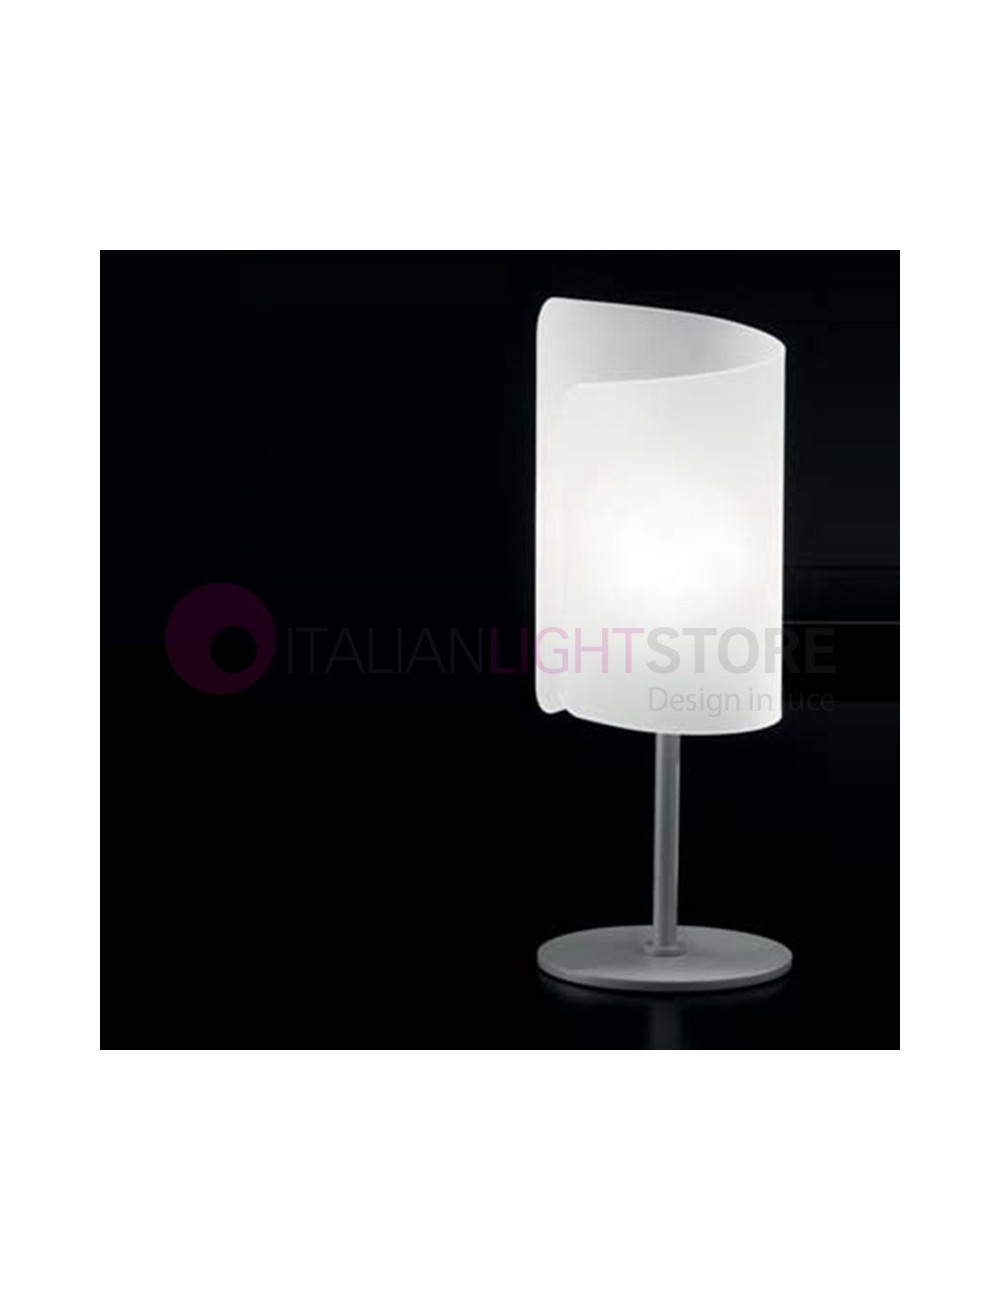 PAPIRO 0380 Selène Iluminación | Lámpara de mesa Mesita de noche Abat-Jour en cristal curvo diseño moderno